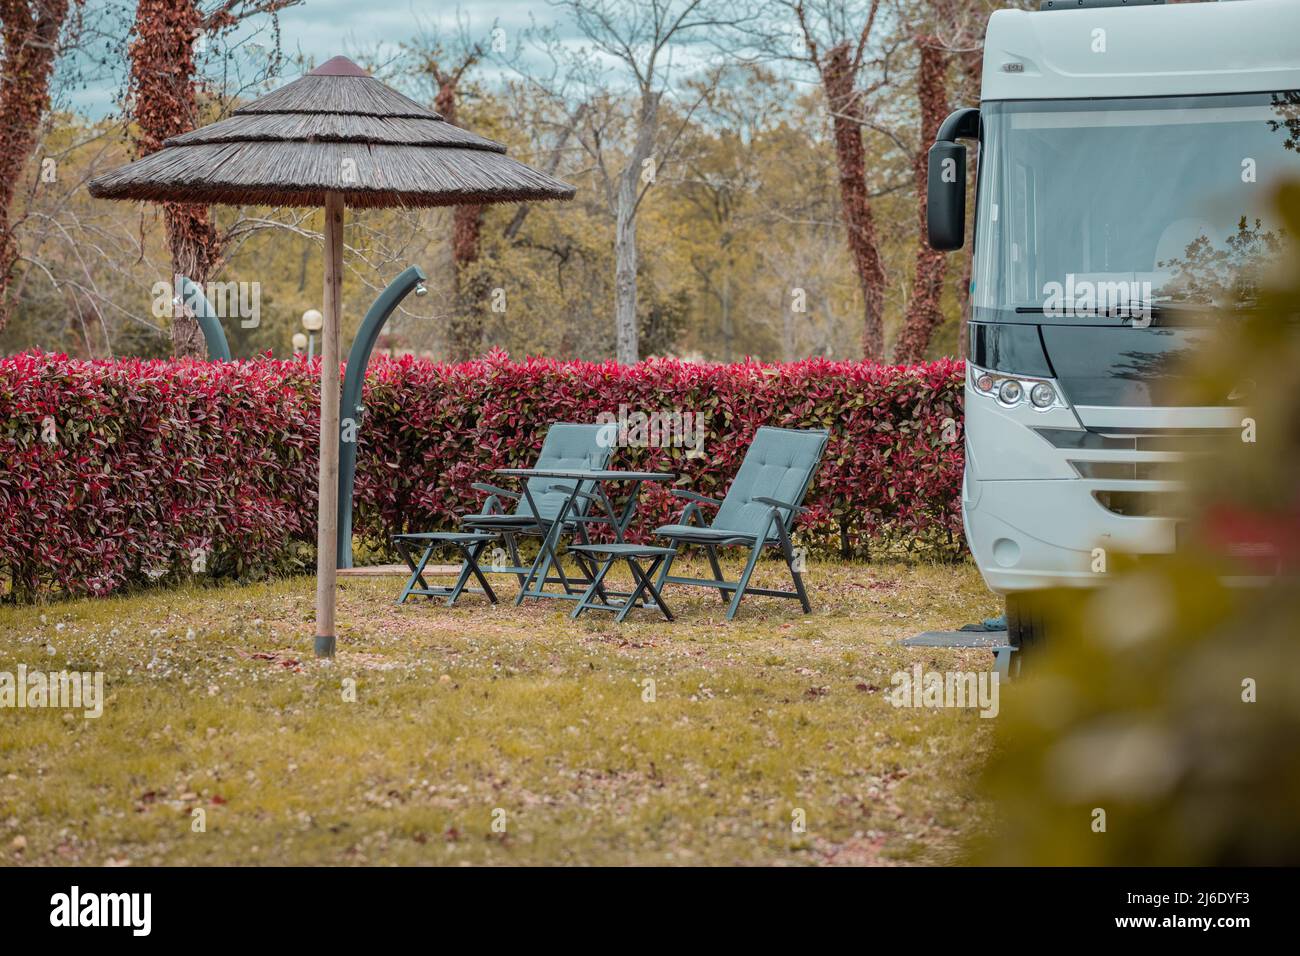 Deux chaises longues vides devant un motard chic et moderne, garés dans un joli camping-car entouré de plantes rouges luxuriantes. Camping moderne avec caméra Banque D'Images